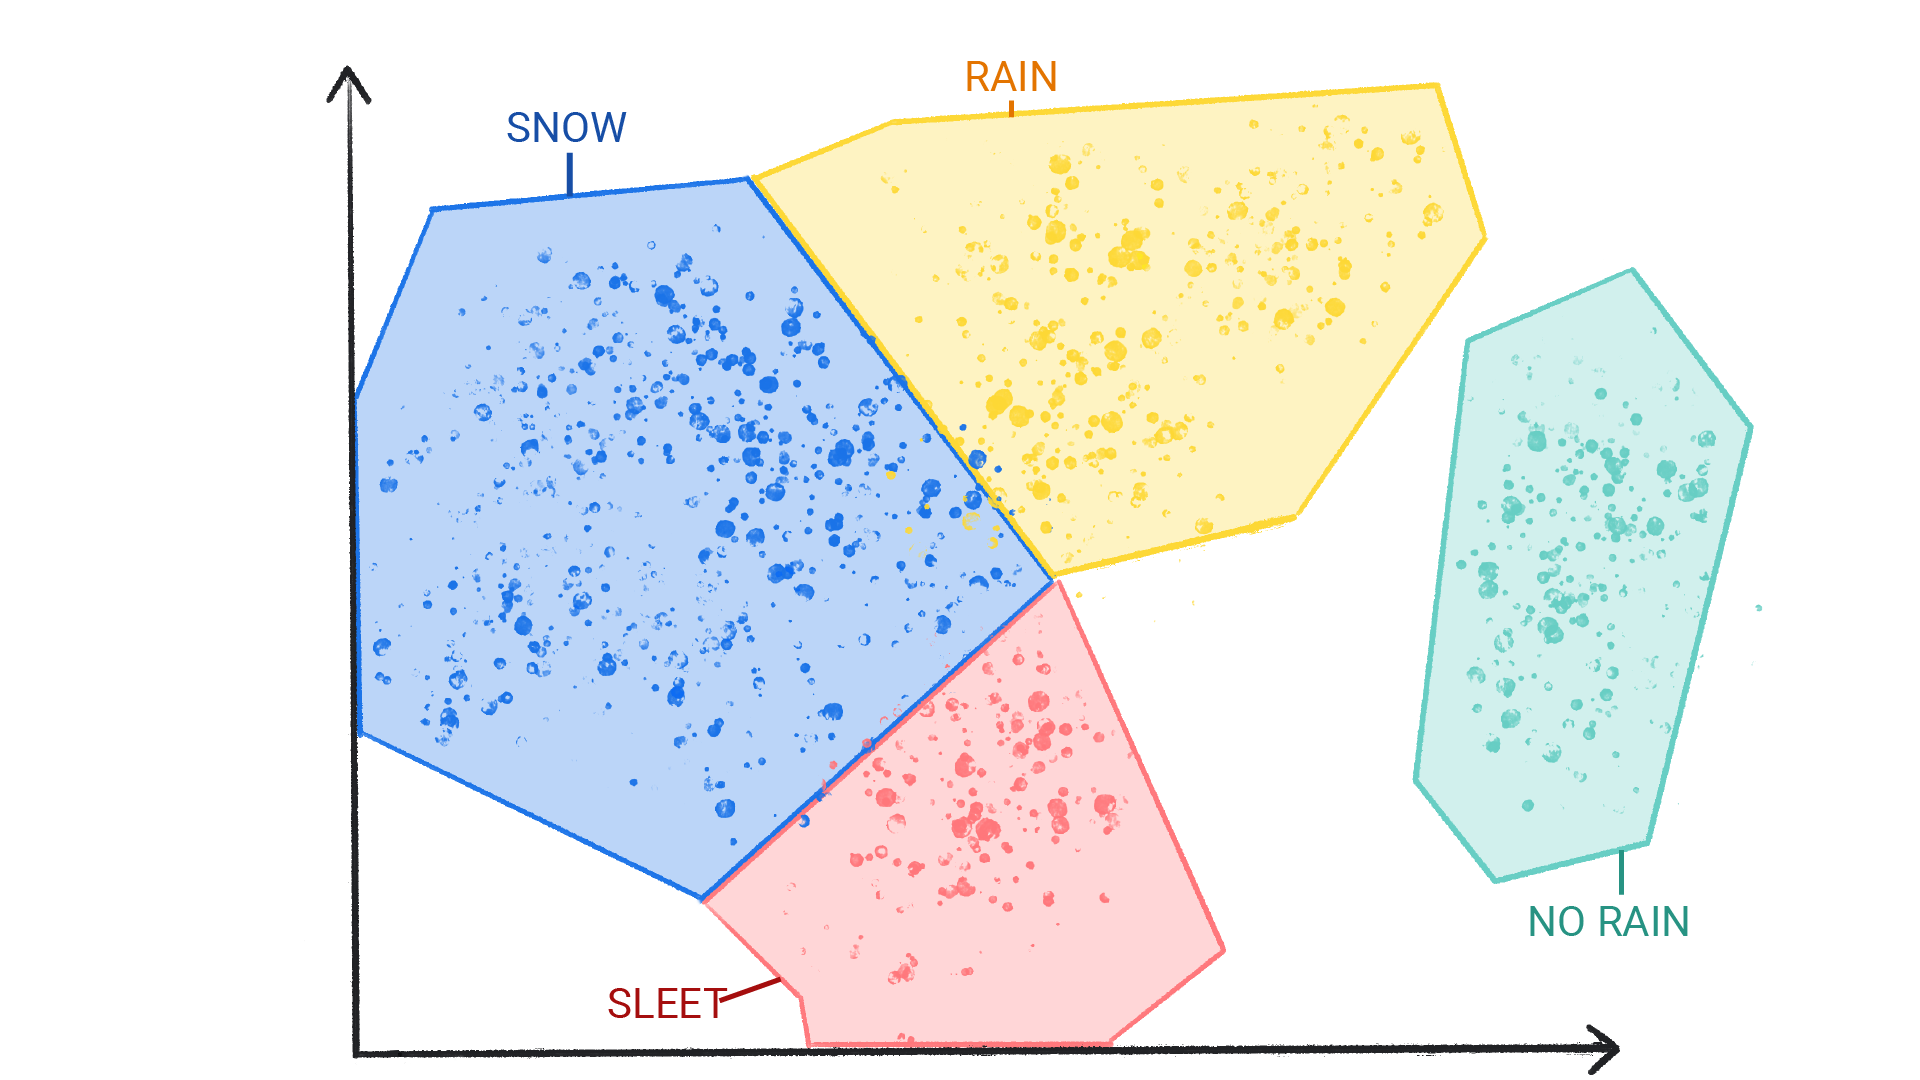 Uma imagem mostrando pontos coloridos em grupos rotulados como neve, chuva, granizo e nenhuma chuva, dentro de uma forma e nas bordas.